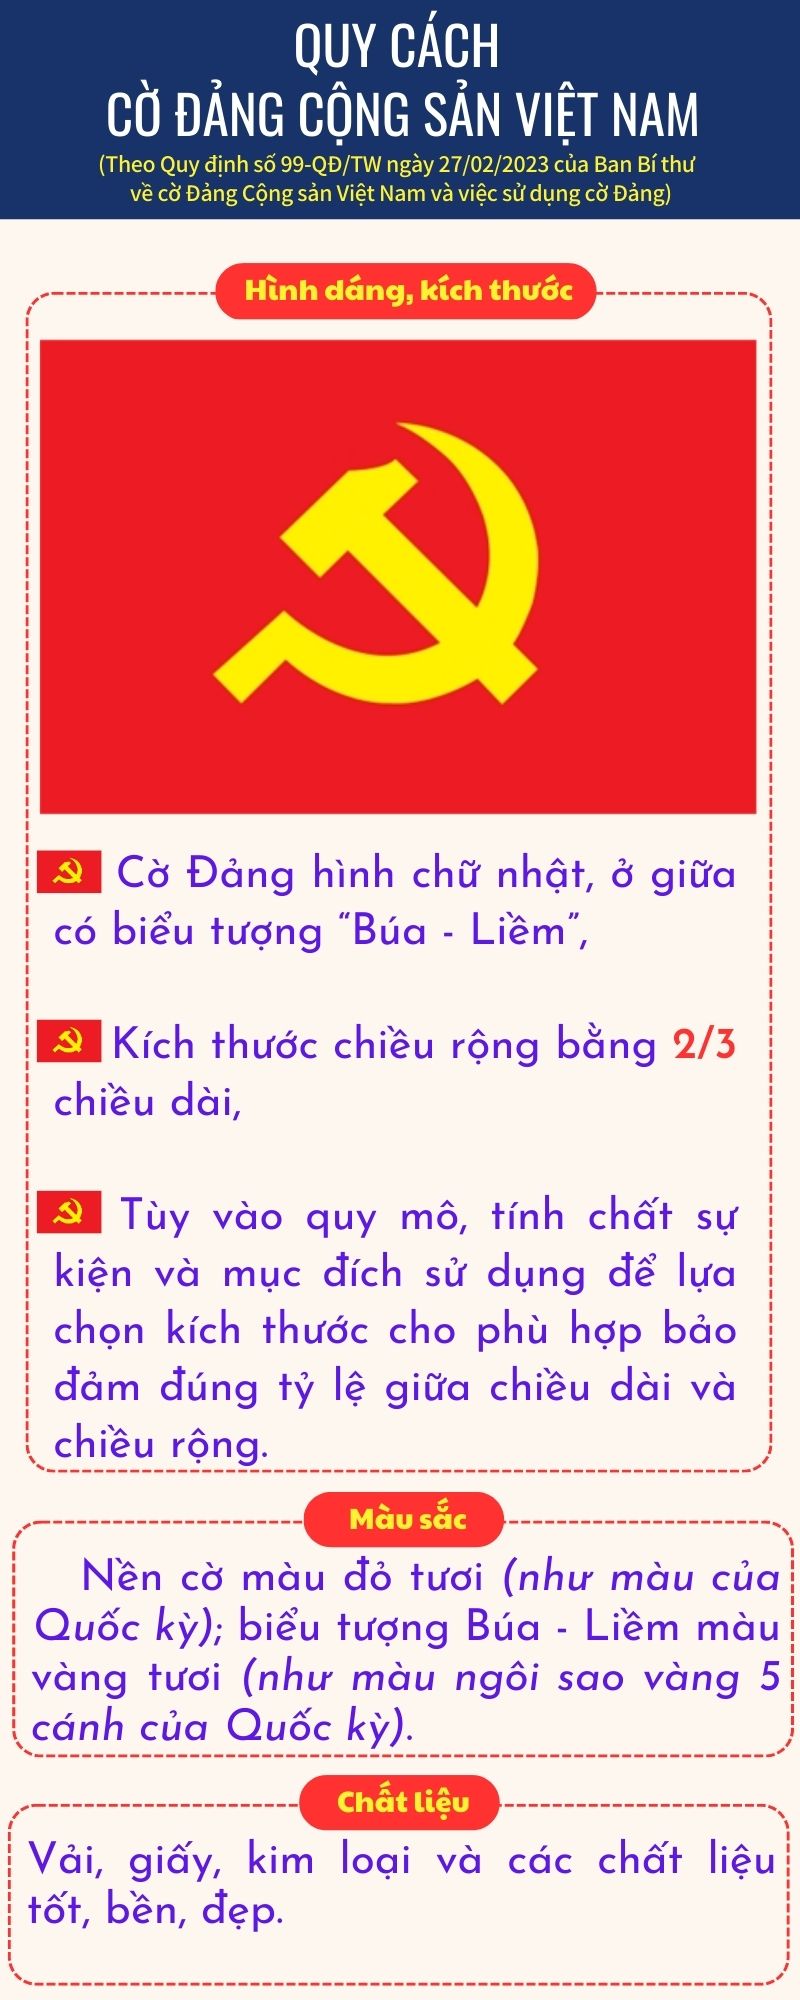 Quy cách cờ Đảng Cộng sản Việt Nam